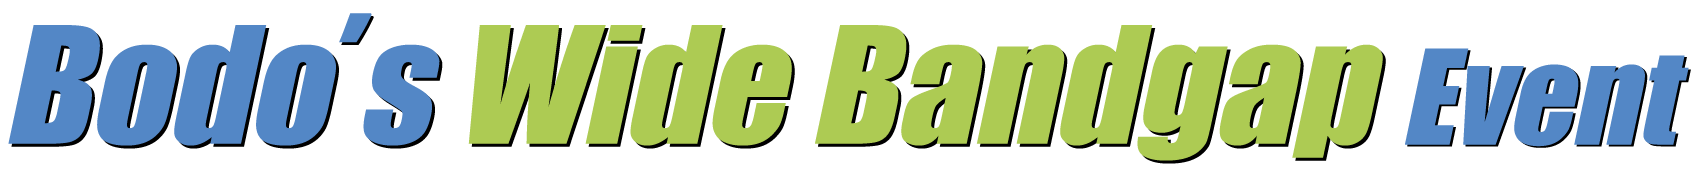 Bodo's WBG logo